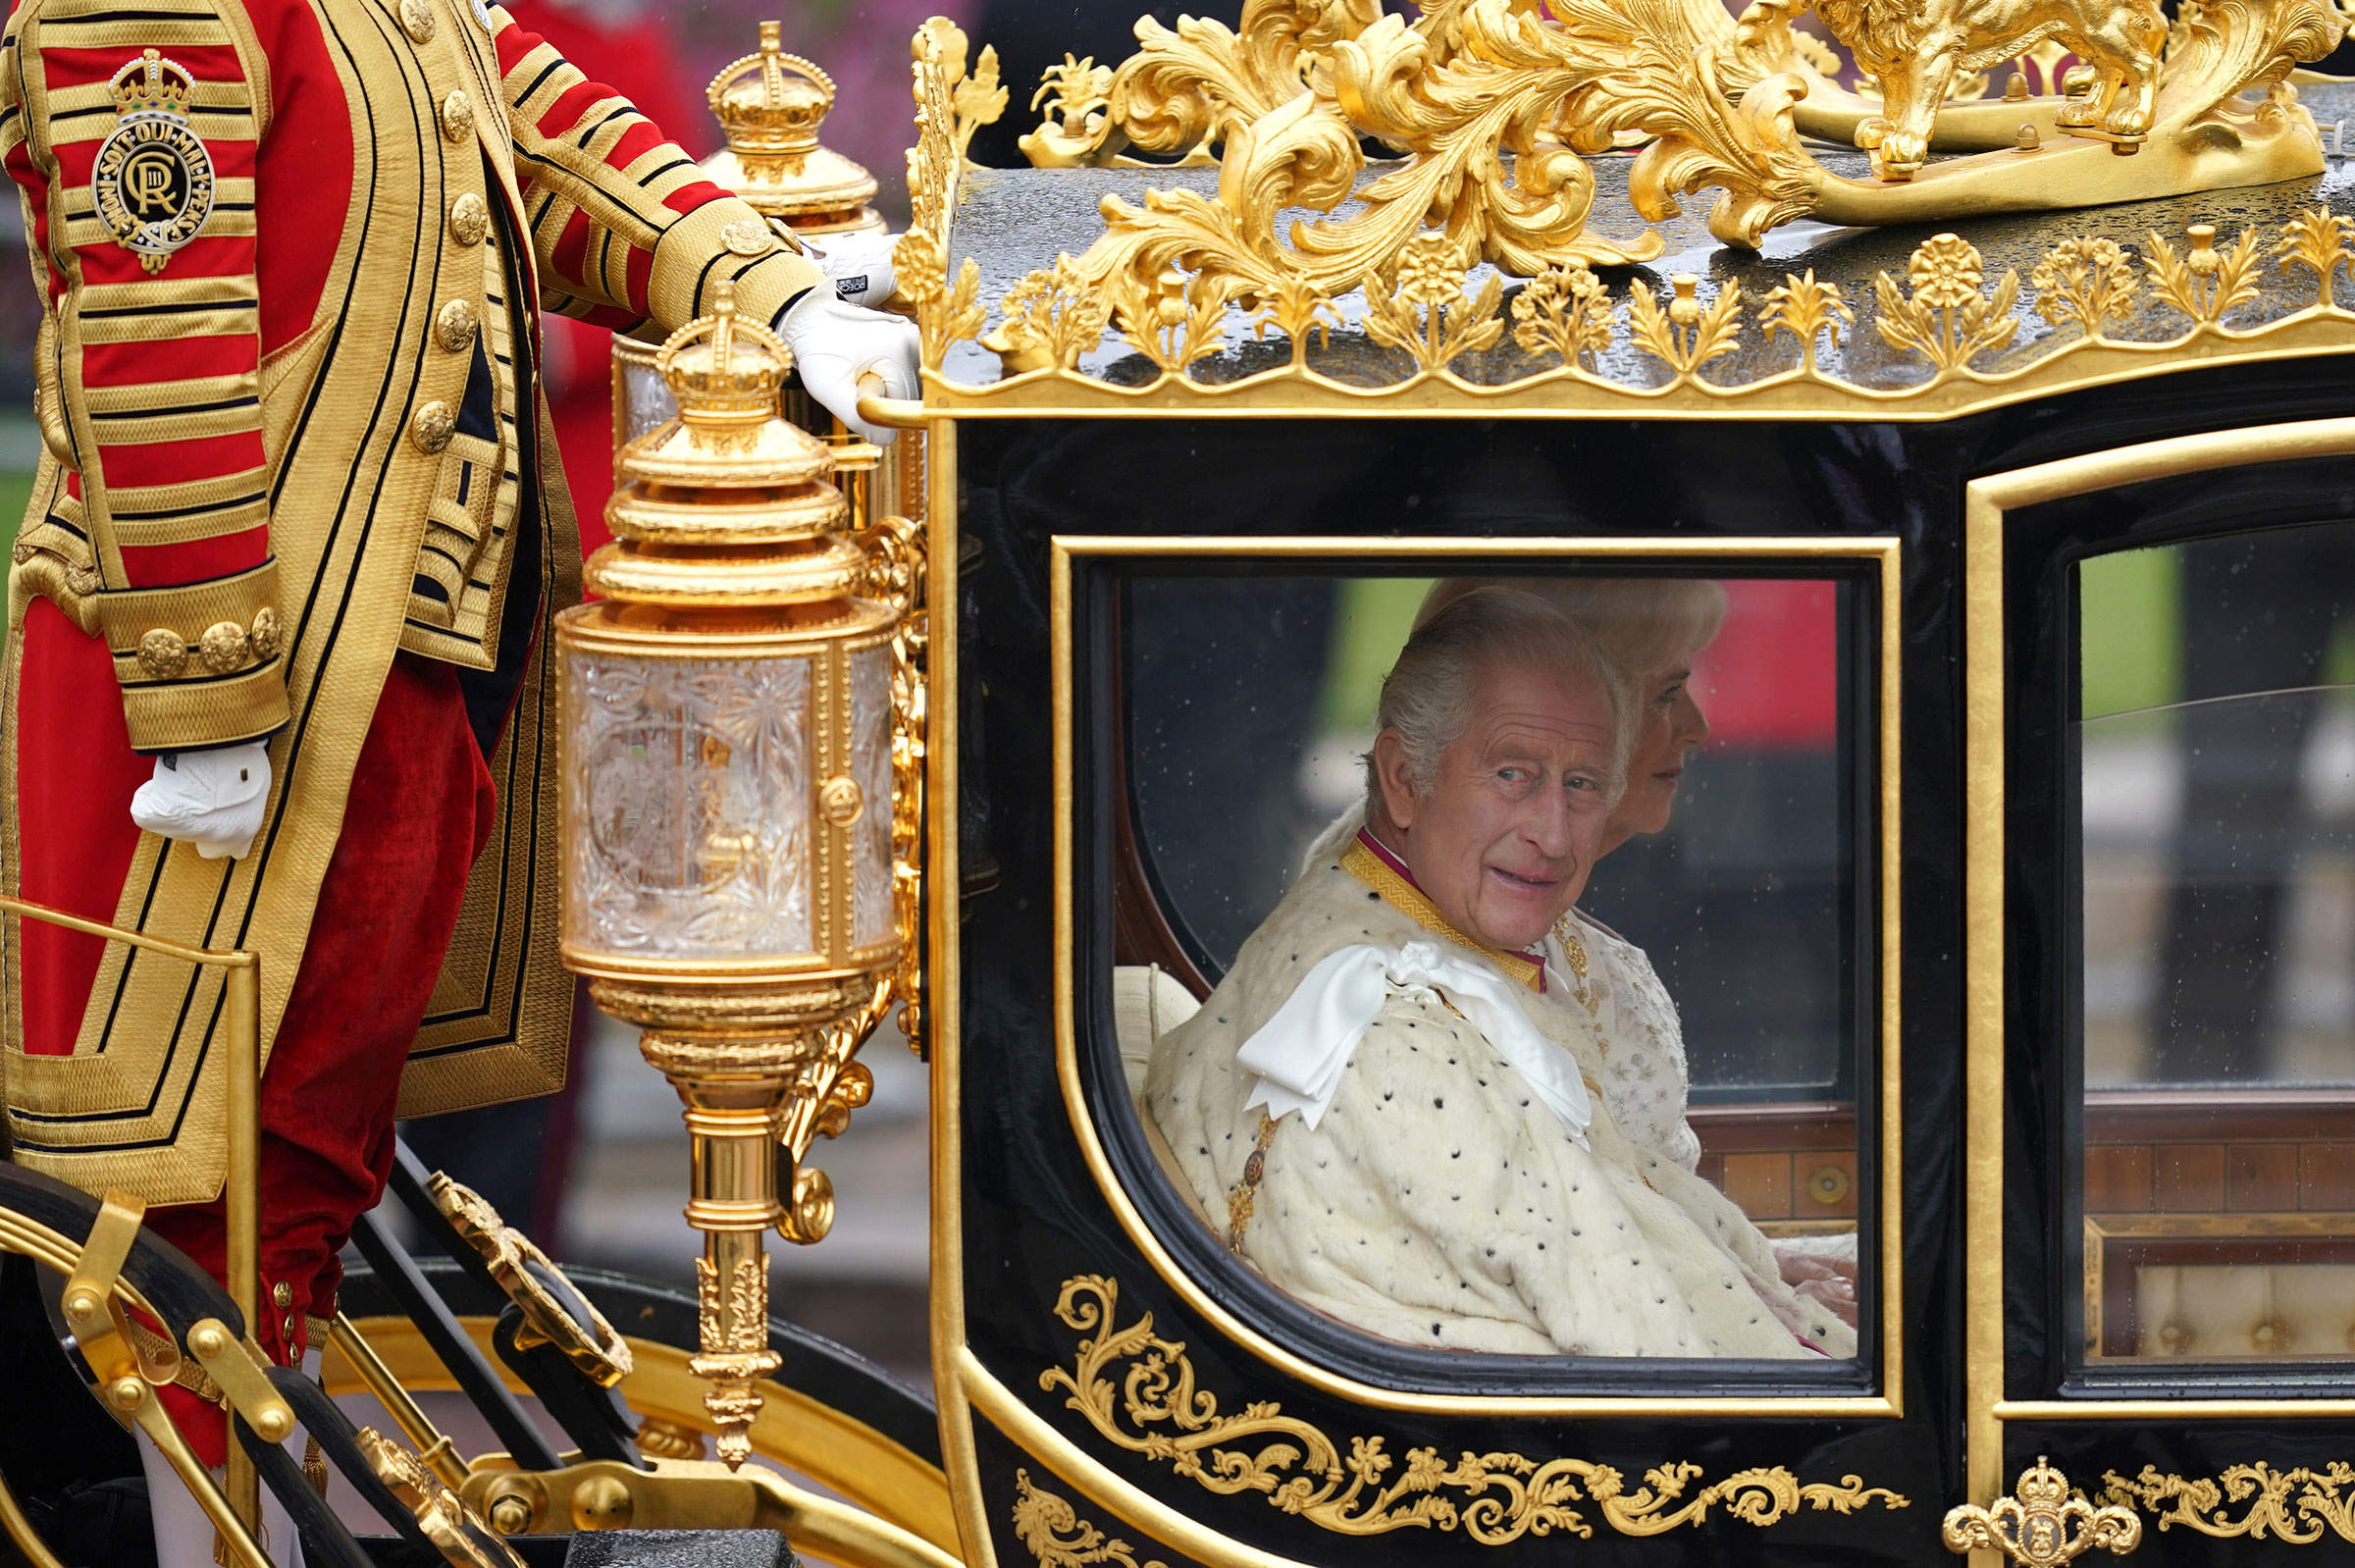 Kral Charles III Taç Giyme Töreni: Tanımlayıcı Anların Fotoğrafları